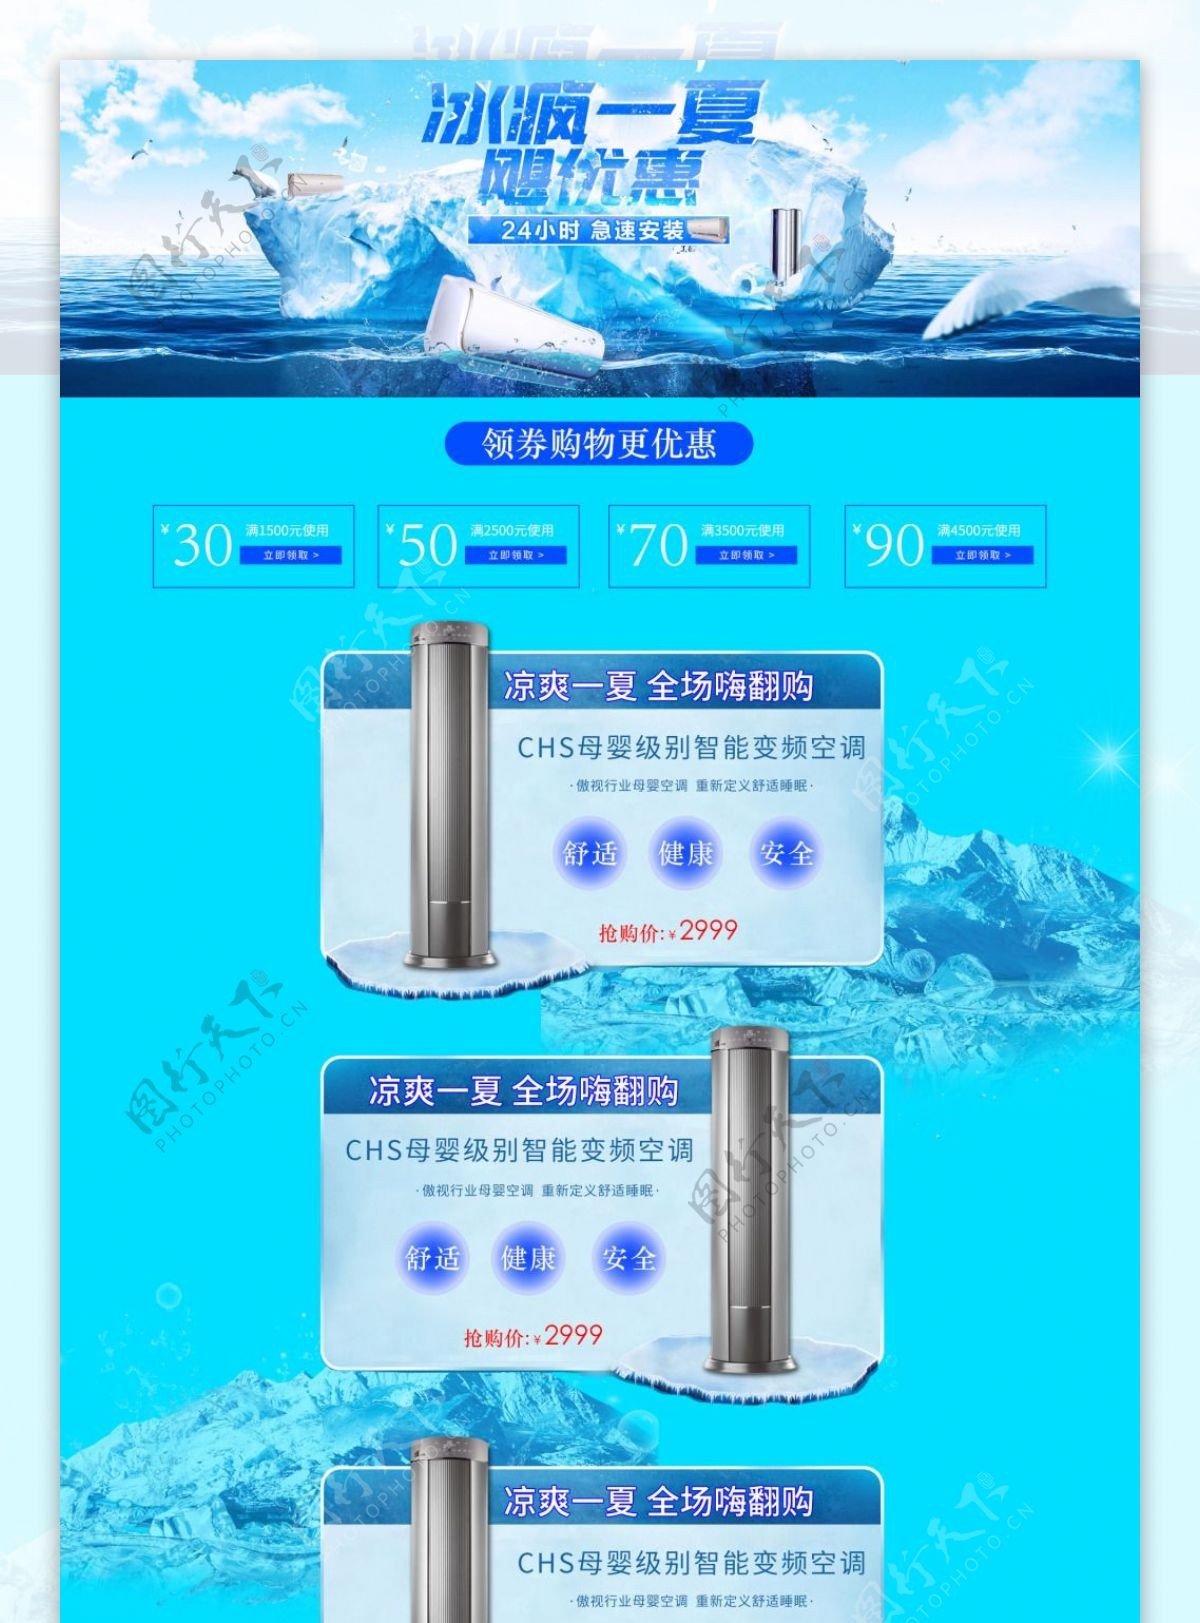 淘宝天猫京东电商夏季数码电器首页海报模板